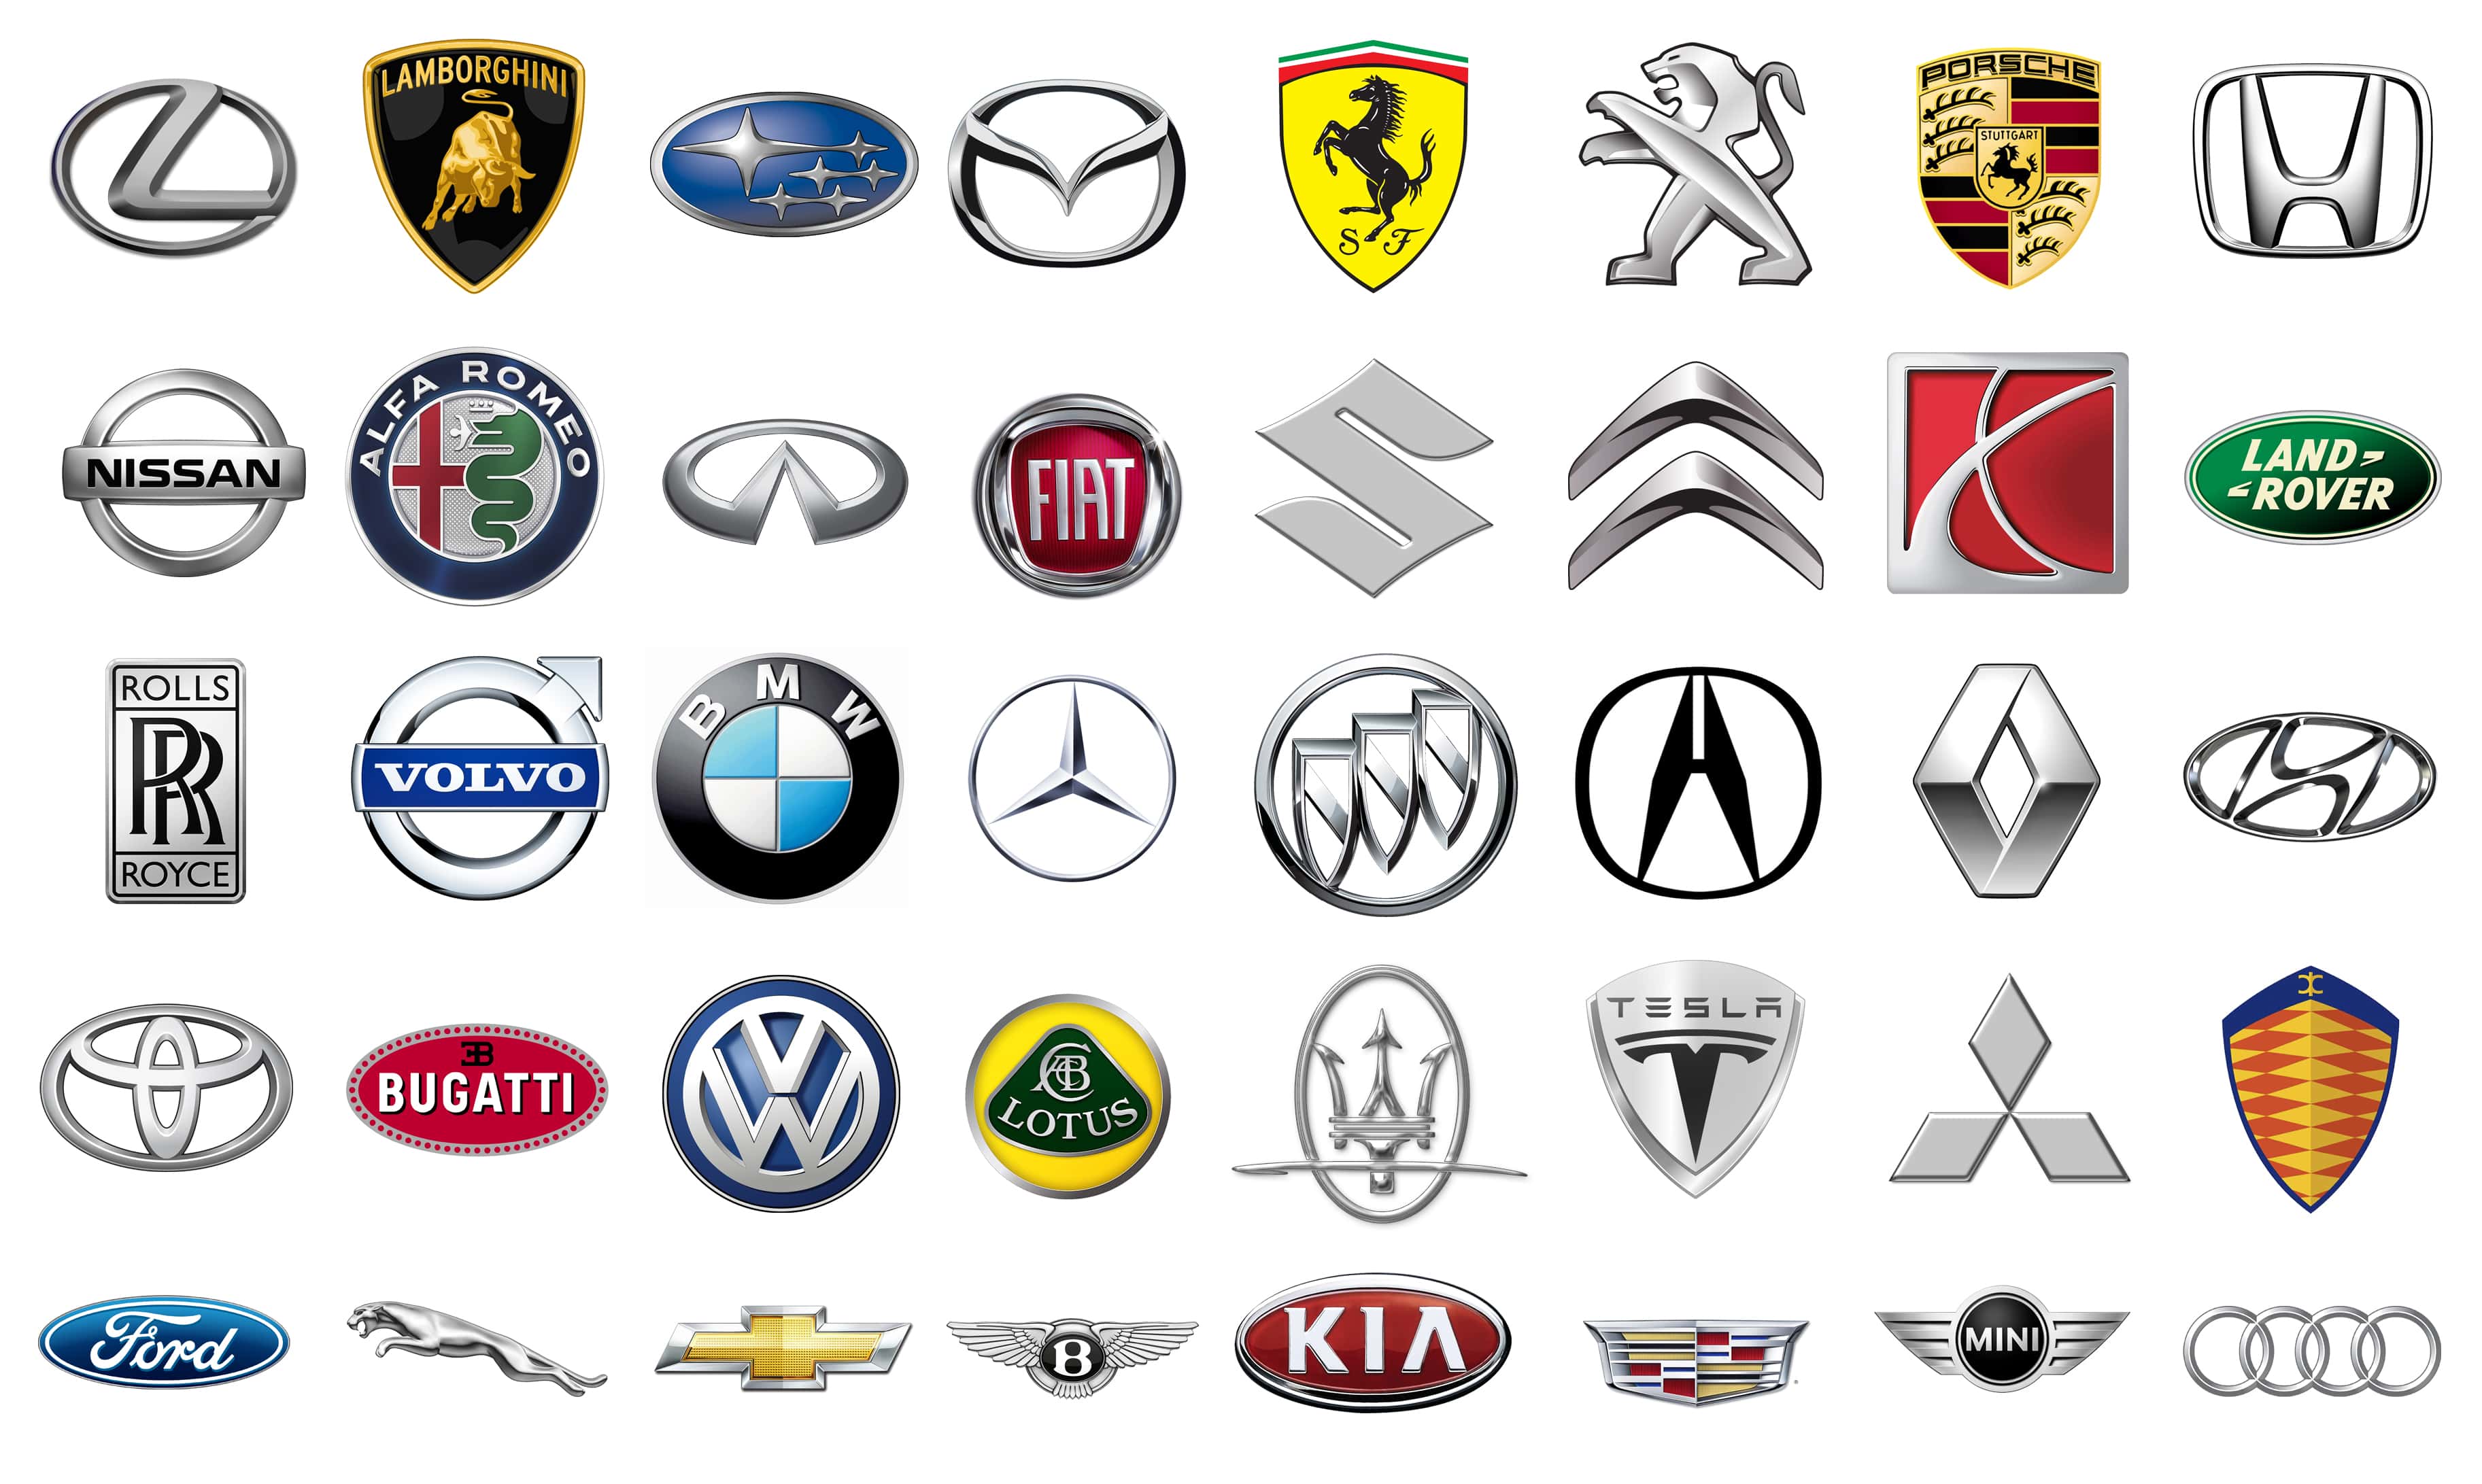 Фирмы производителей автомобилей. Марки автомобилей. Автомобильные значки. Эмблемы машин. Логотипы автомобильных марок.